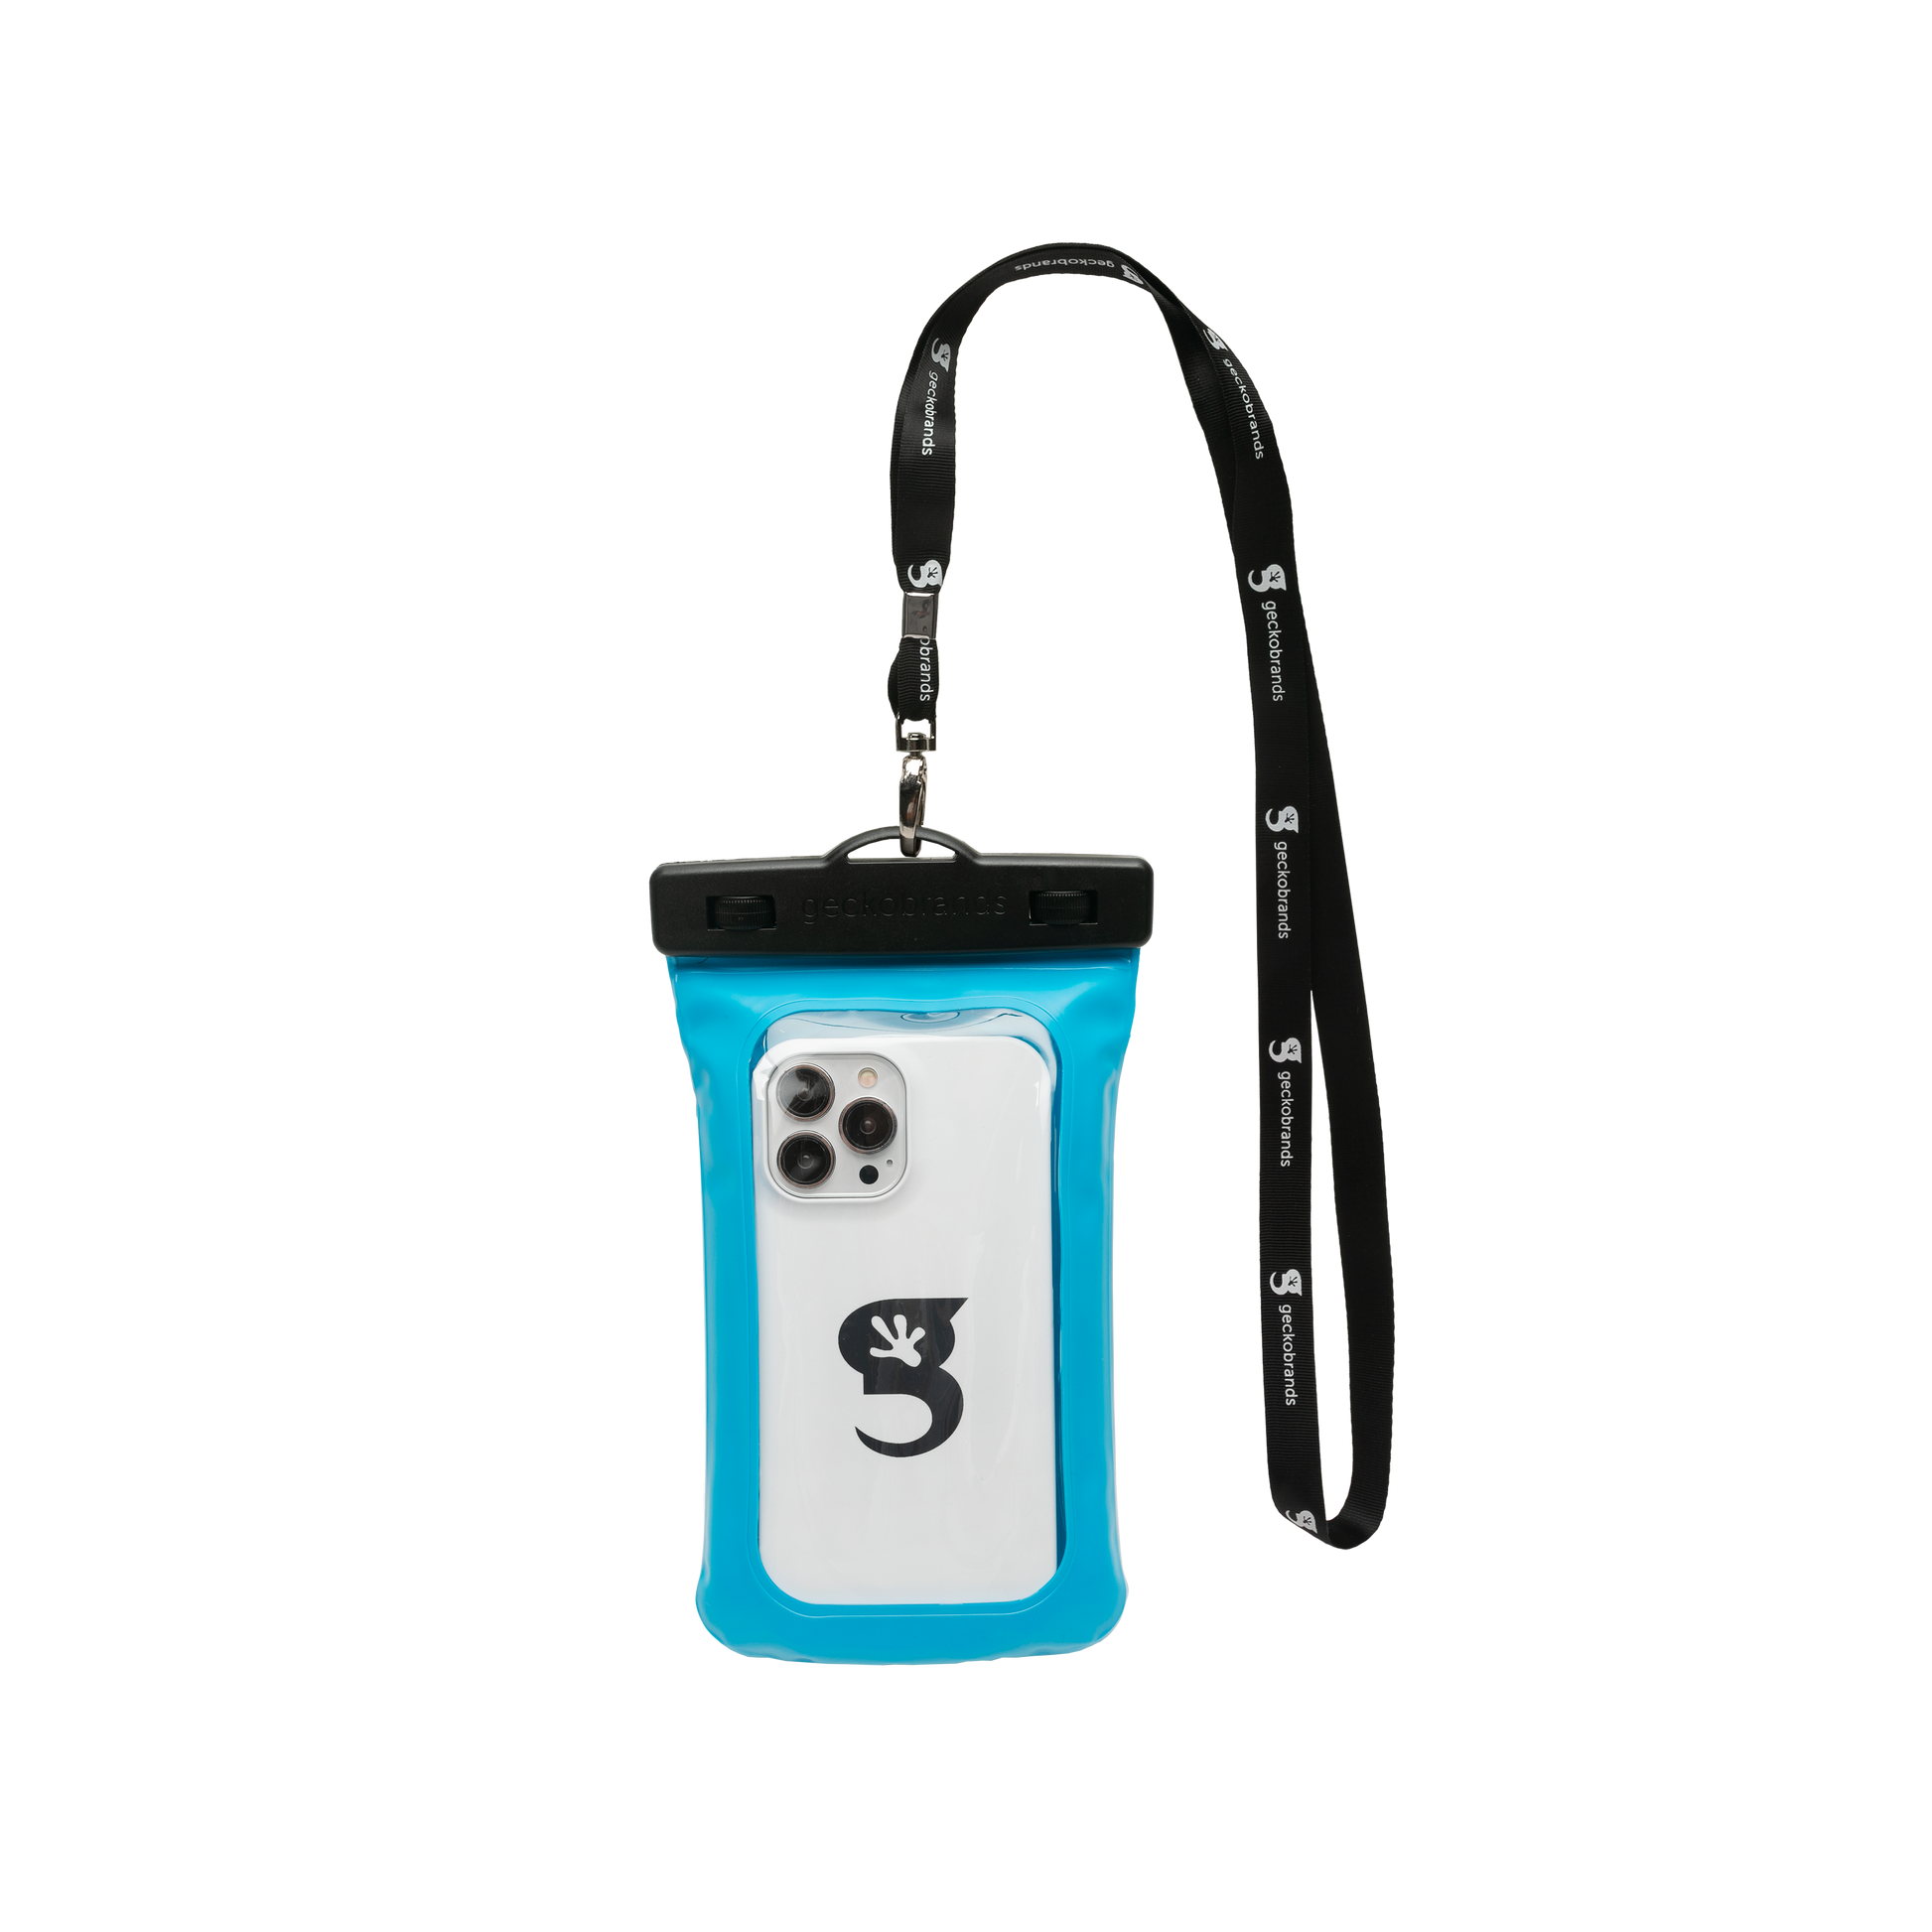 Tie Dye Personalized Water Bottle - In B Tween - In.B.Tween